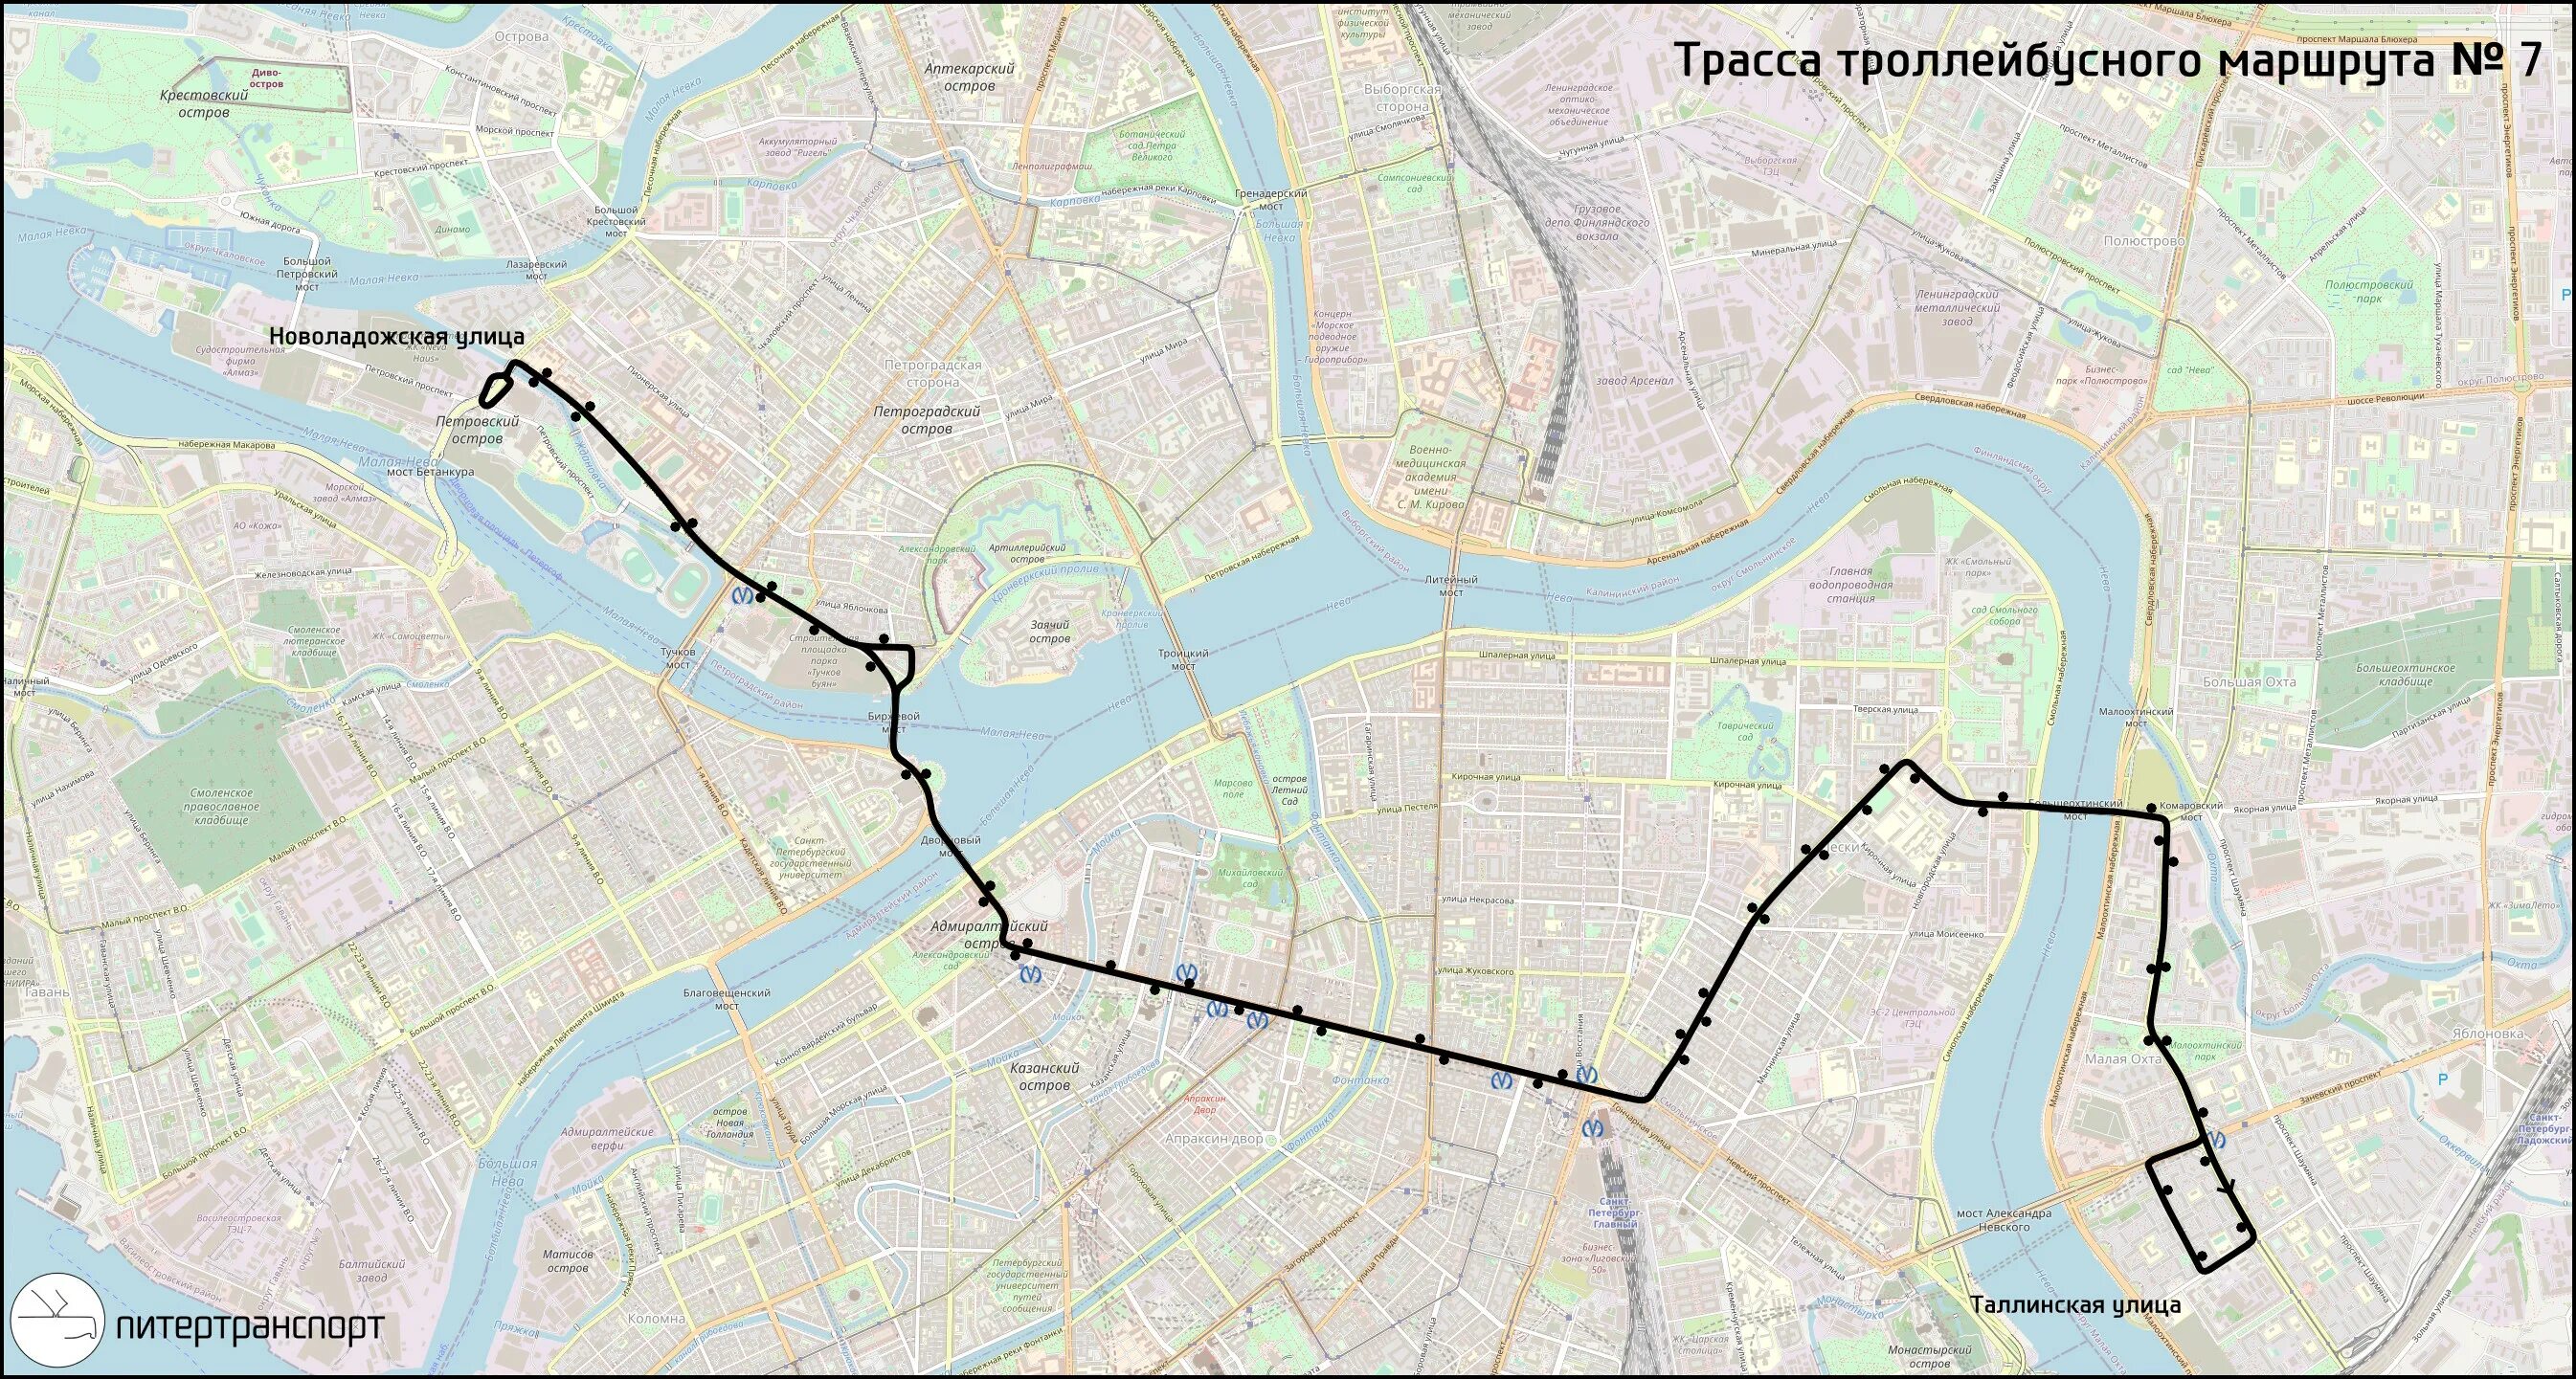 Питер троллейбус 1 маршрут. Маршрут 31 троллейбуса СПБ. Маршрут 10 троллейбуса СПБ. Троллейбусные маршруты Санкт-Петербурга.